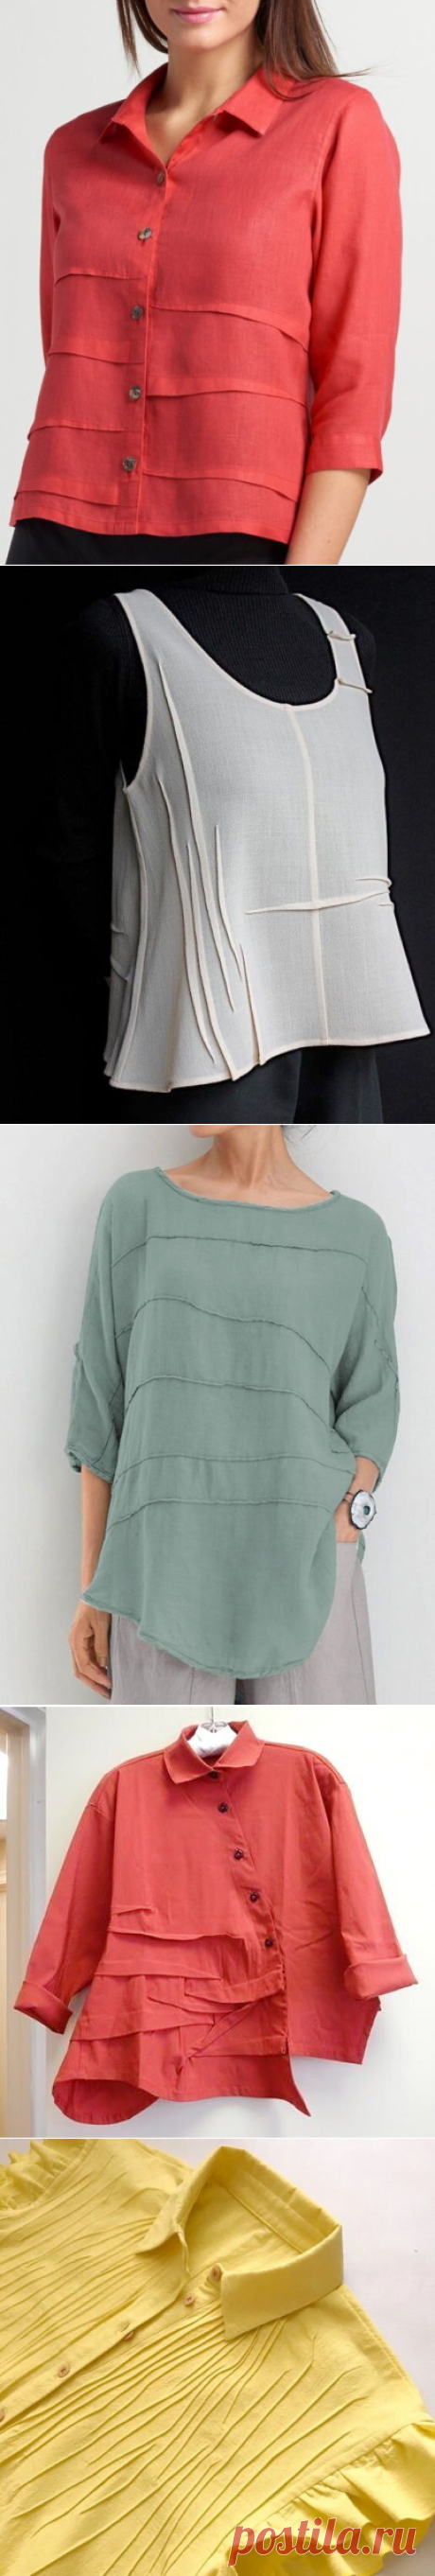 Простой декор летних блузок - защипы, красиво, а выполнить проще простого! | Время шить | Яндекс Дзен